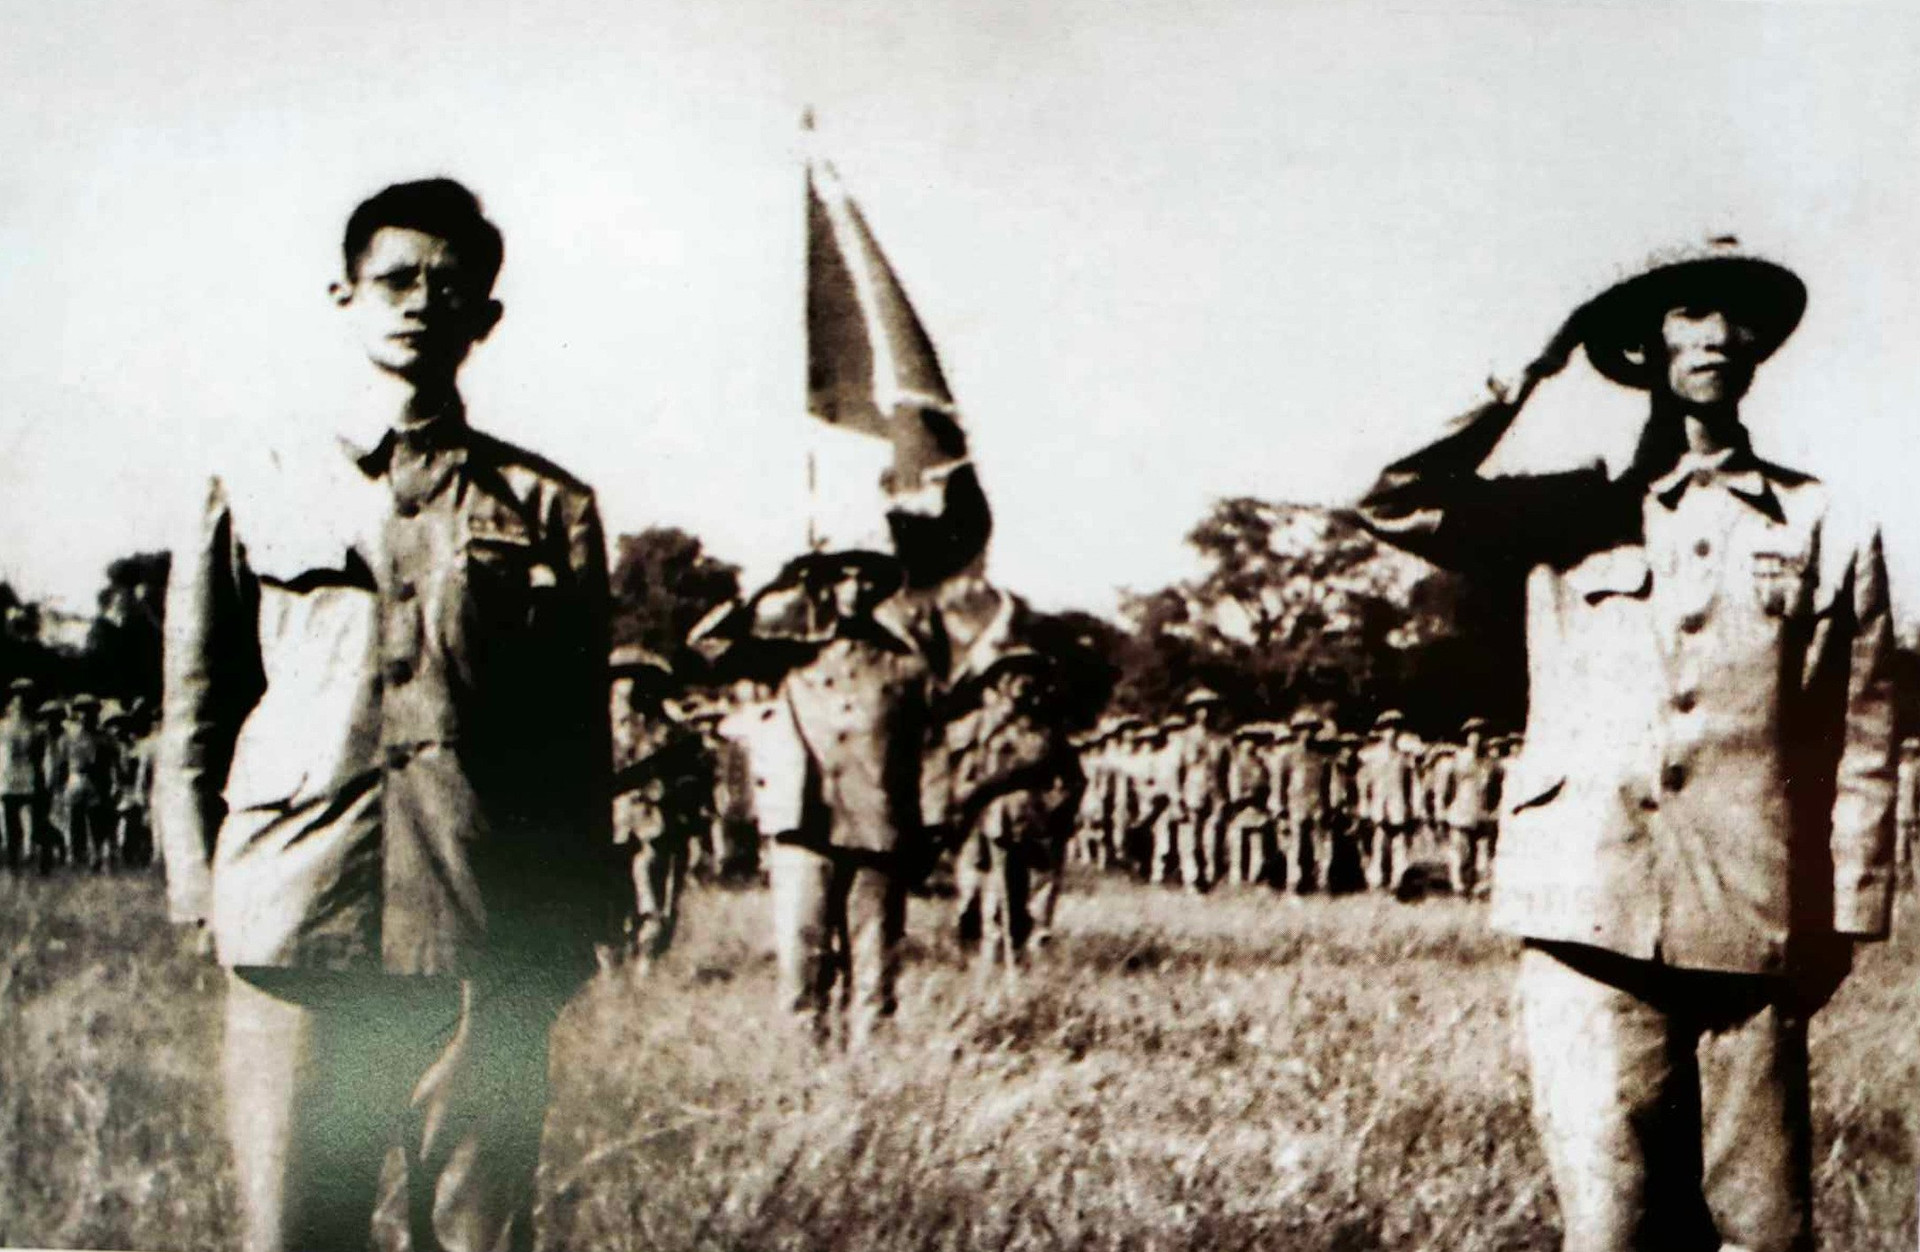 Bác sĩ Trần Duy Hưng (bên trái) cùng Thiếu tướng Vương Thừa Vũ duyệt binh tại sân vận động Hà Nội dưới chân cột cờ. Ảnh: Tư liệu